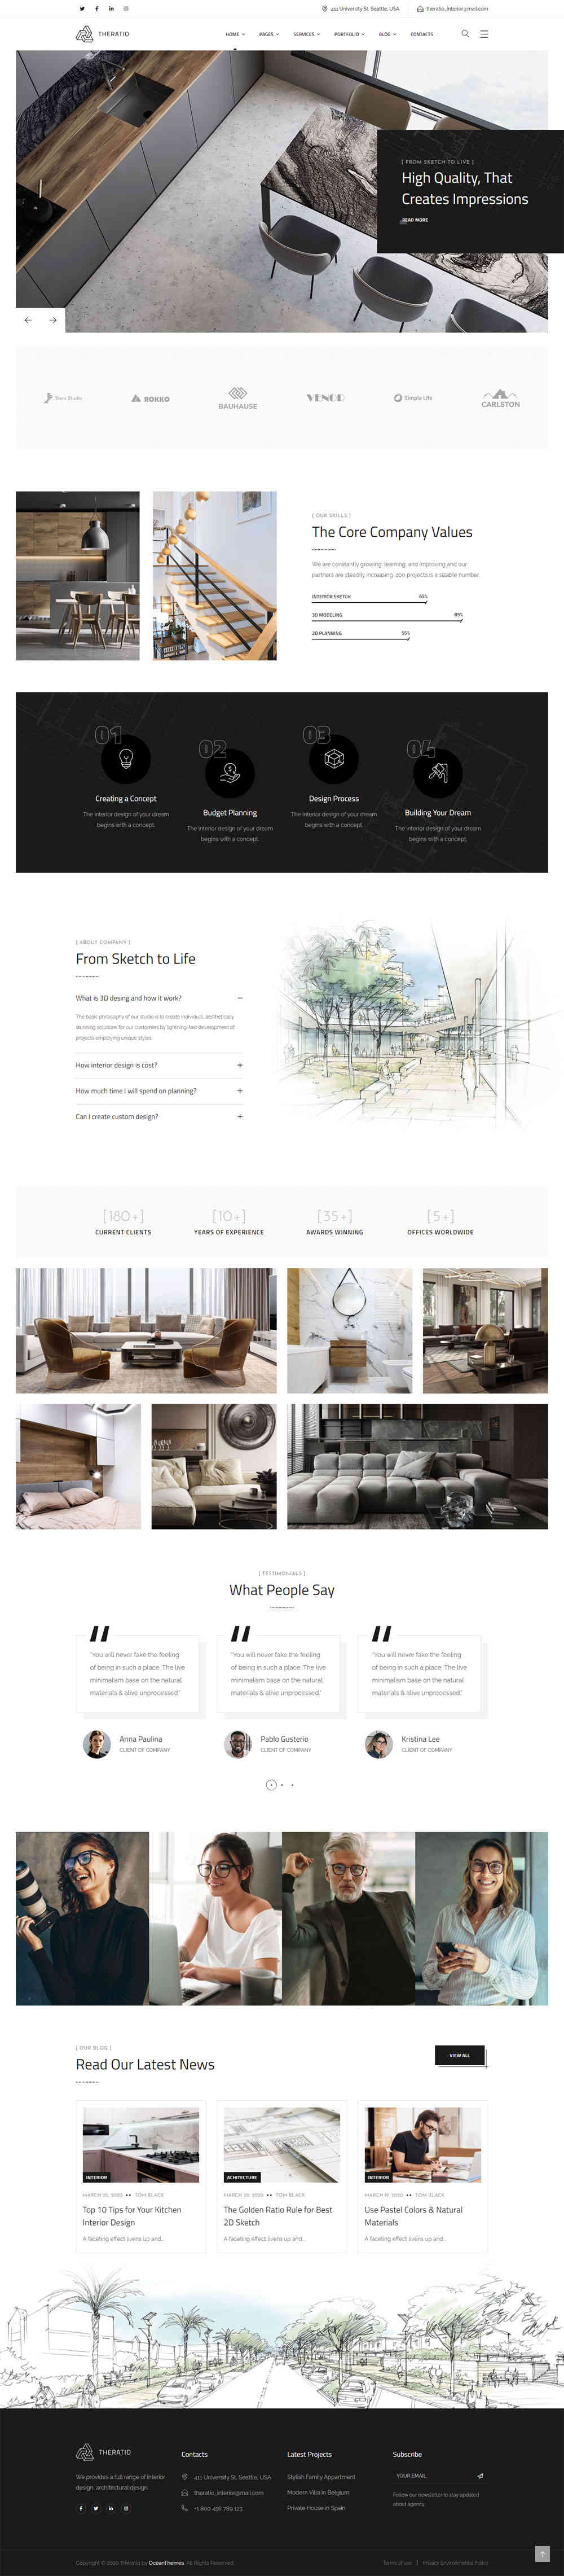 thiet ke website tmi interior design 1019